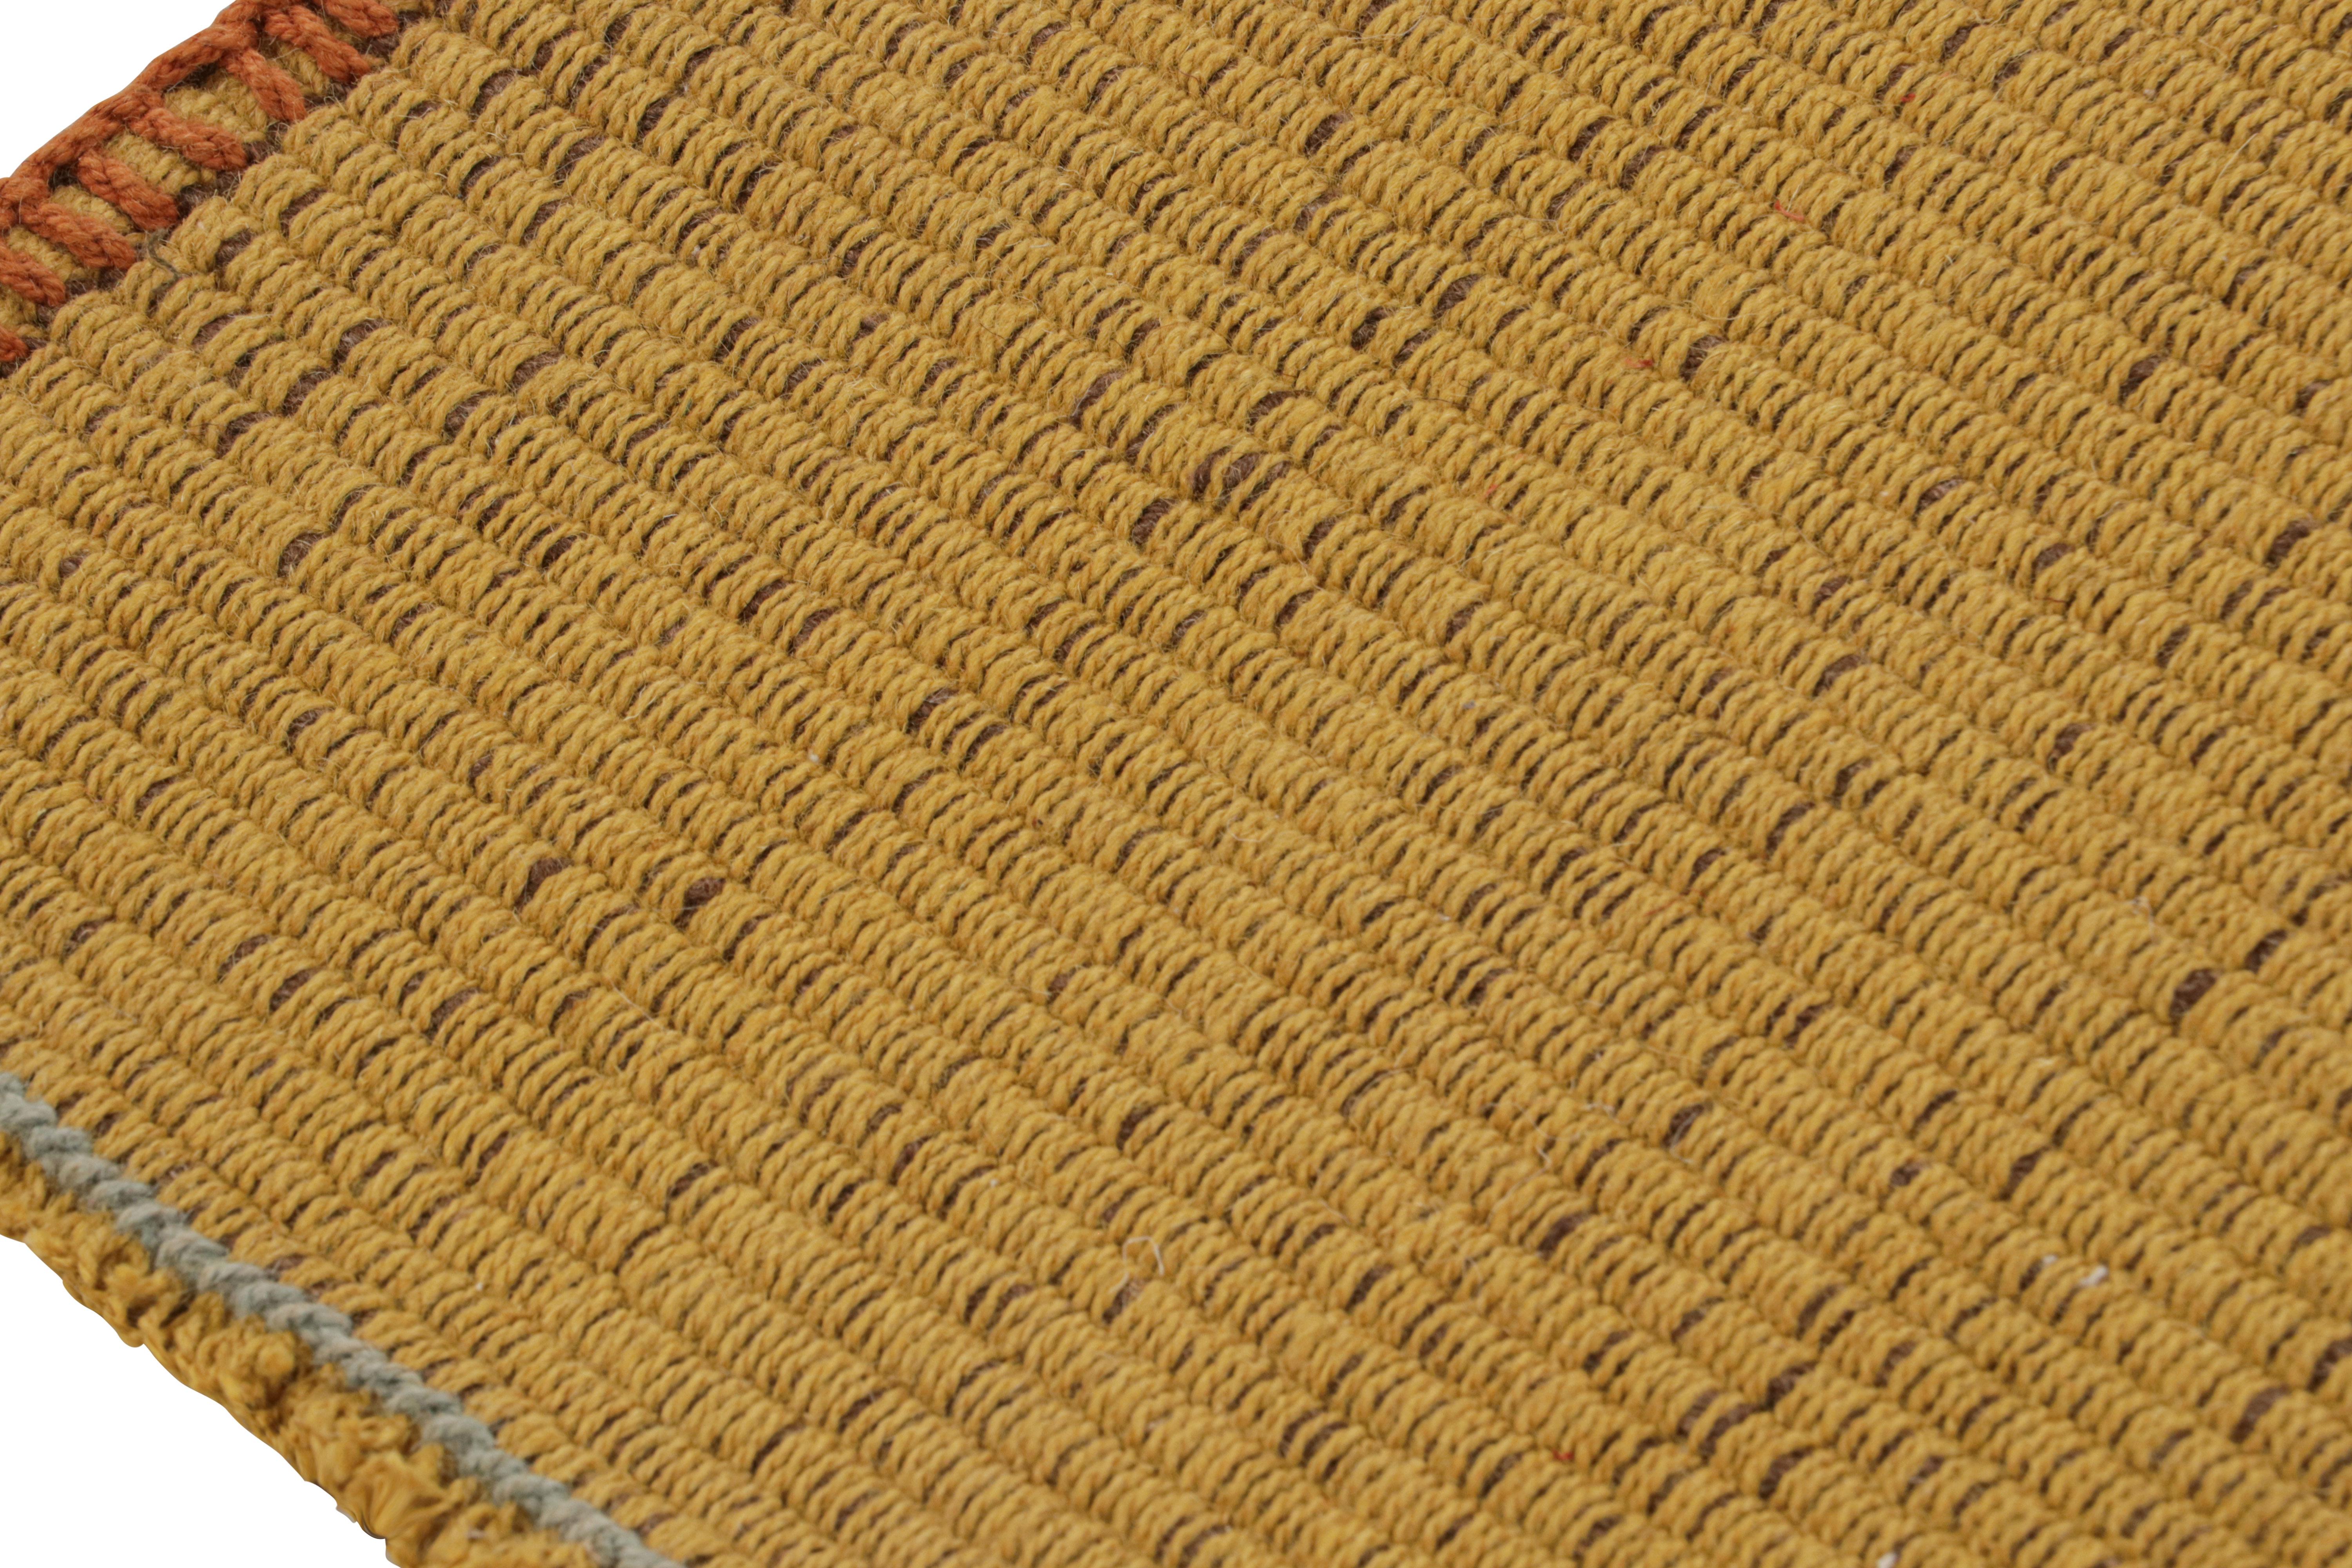 Rug & Kilim's Contemporary Kilim in Gold and Blue Stripes with Brown accents (Kilim contemporain avec des rayures or et bleues et des accents bruns) Neuf - En vente à Long Island City, NY